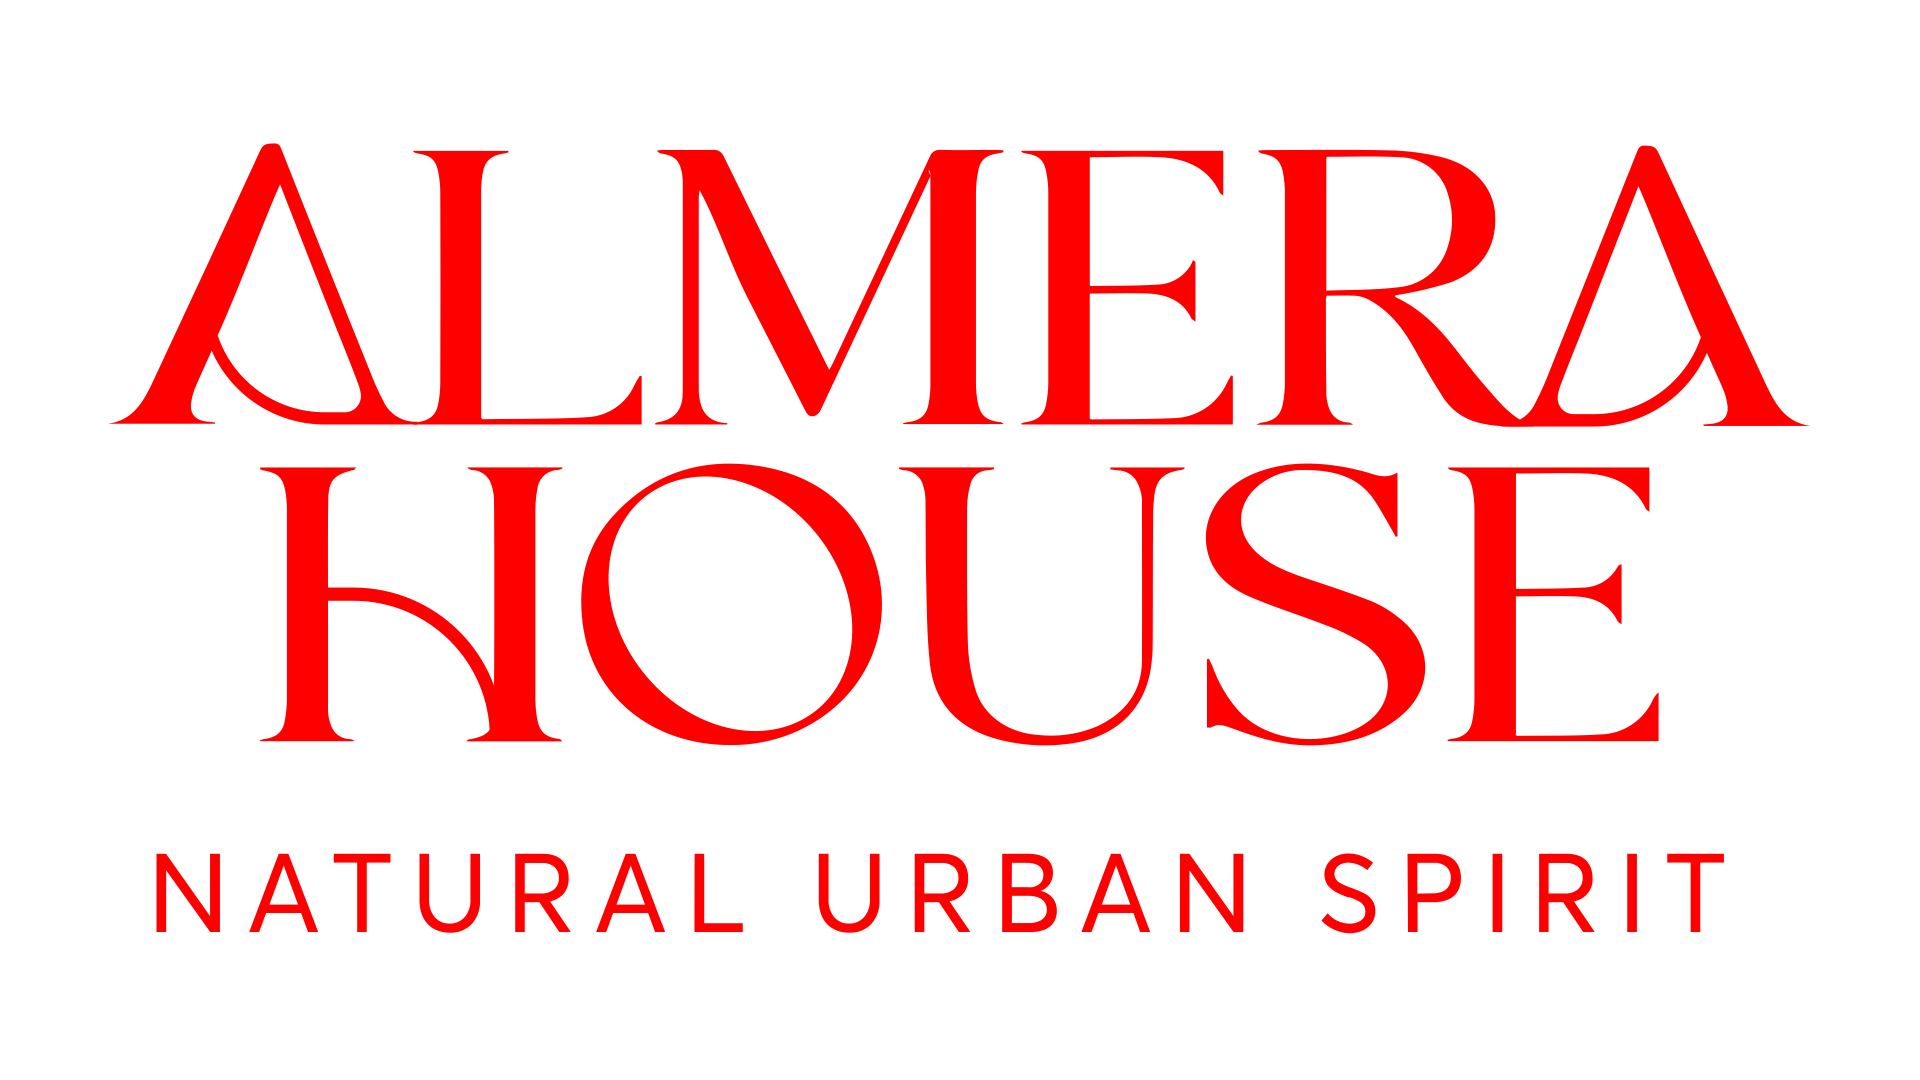 Almera House, Inmobilia project. 